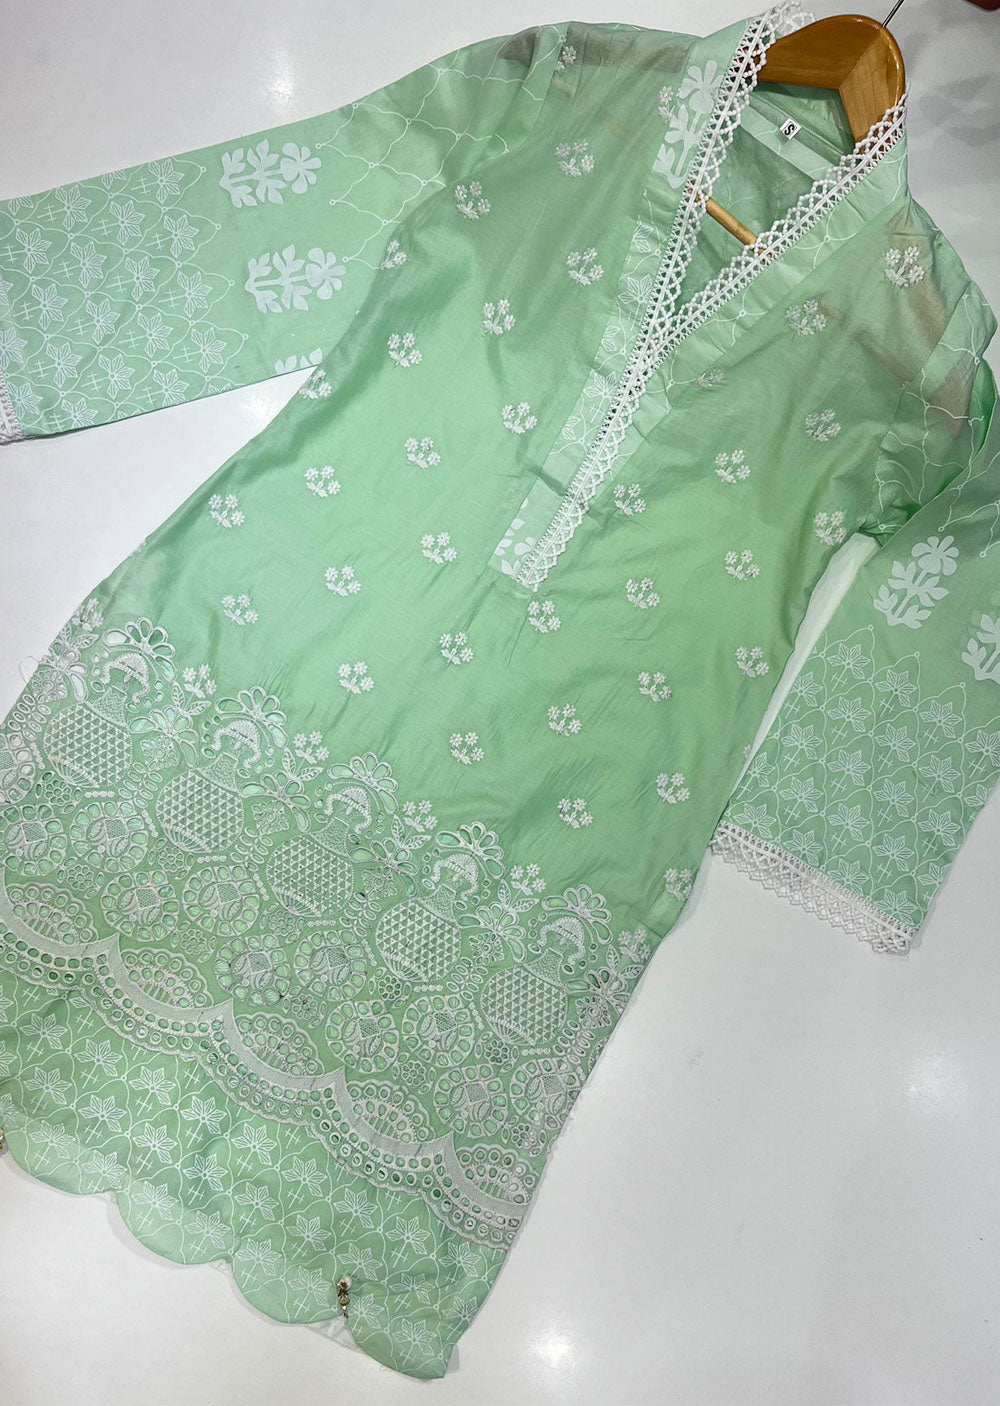 RGZ698 Readymade Green Cotton Linen Kurti - Memsaab Online